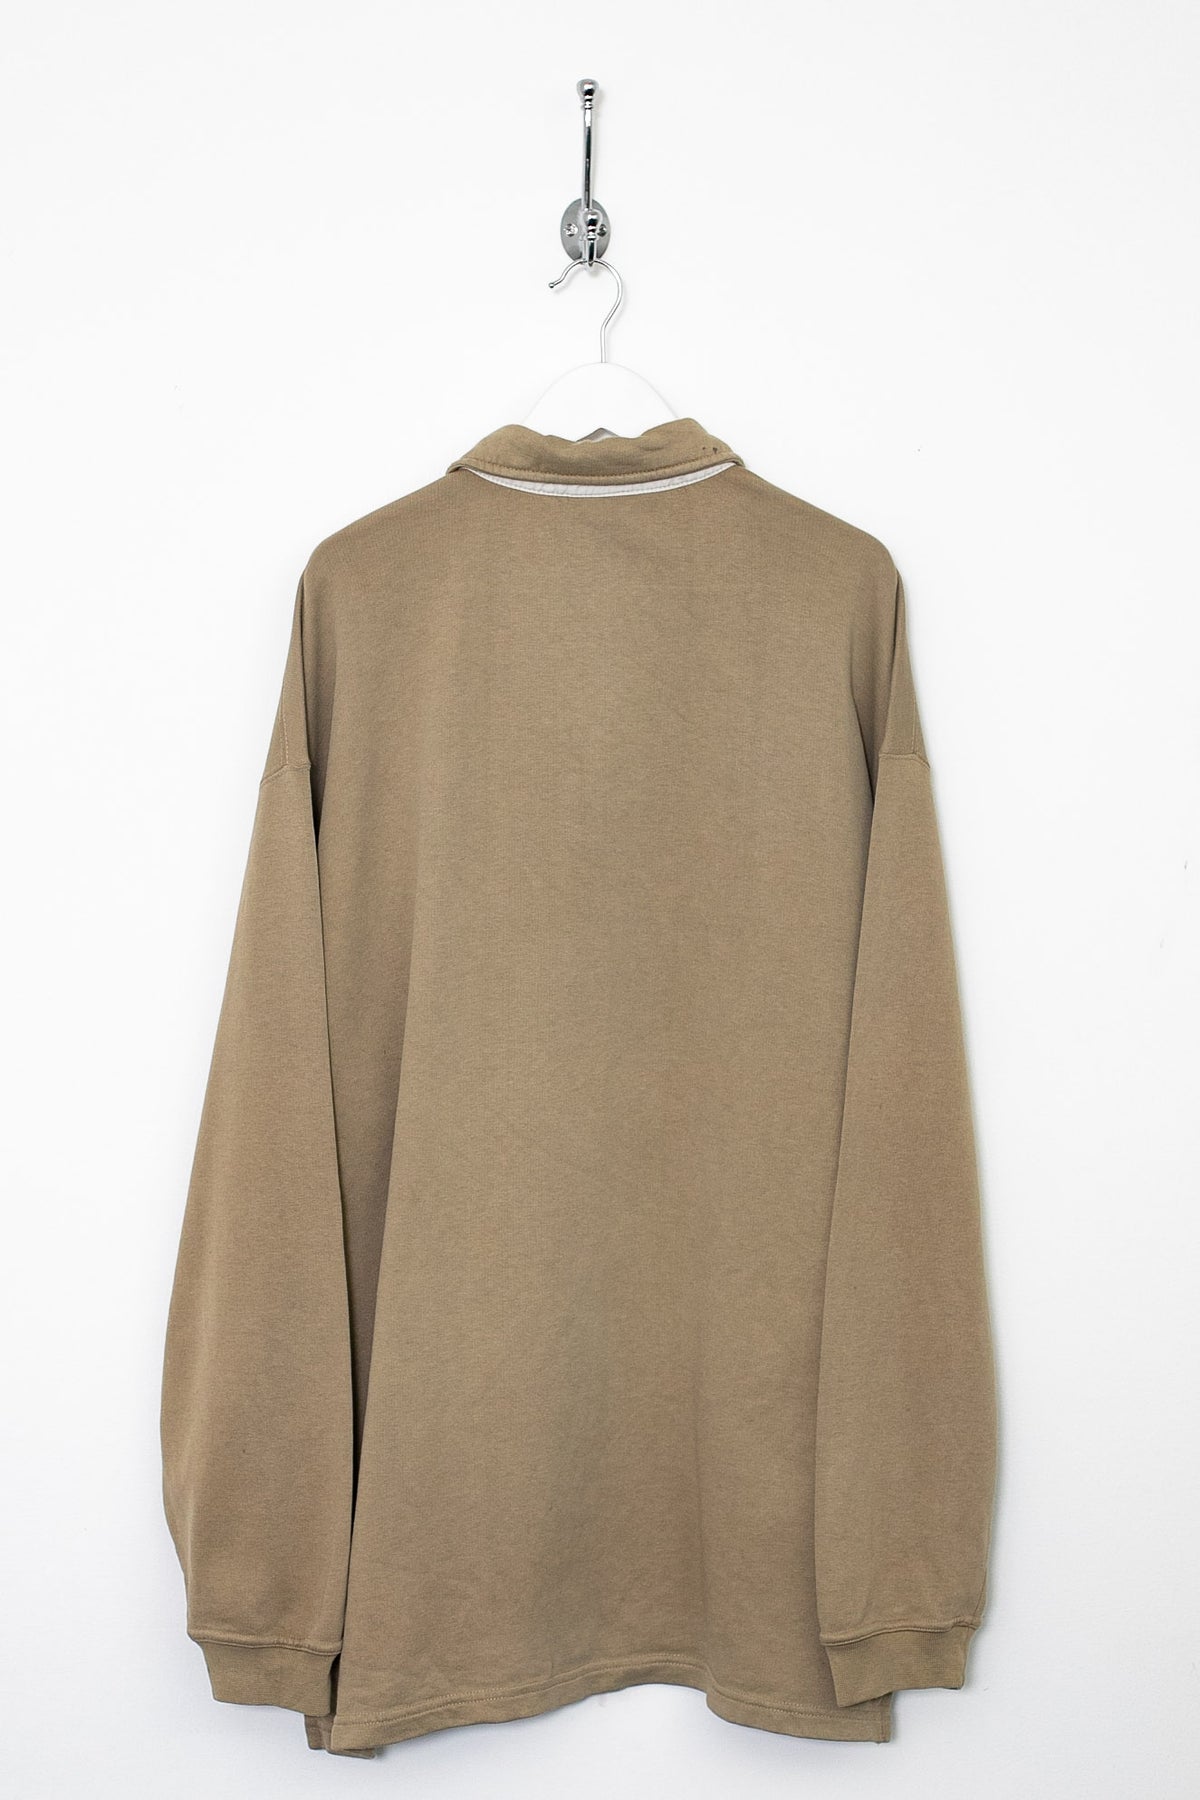 00s Reebok 1/4 Zip Sweatshirt (XL)